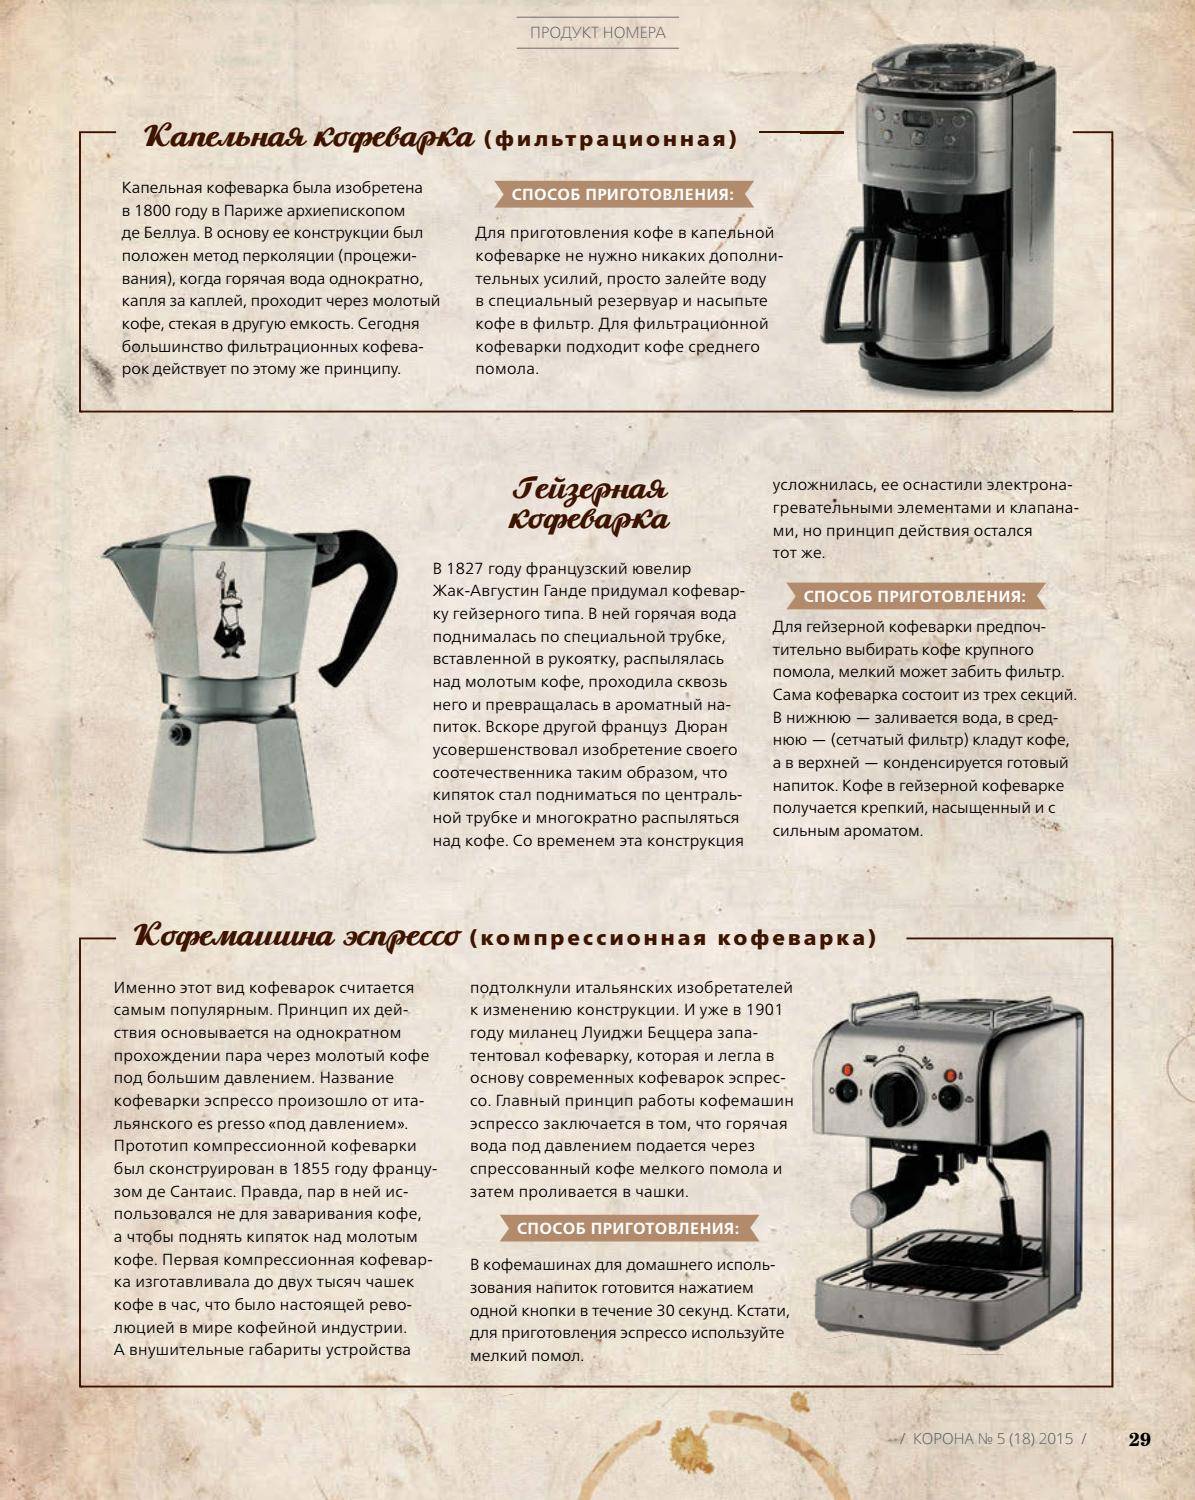 Как выбрать кофе для кофеварки: сорт, помол, обжарка